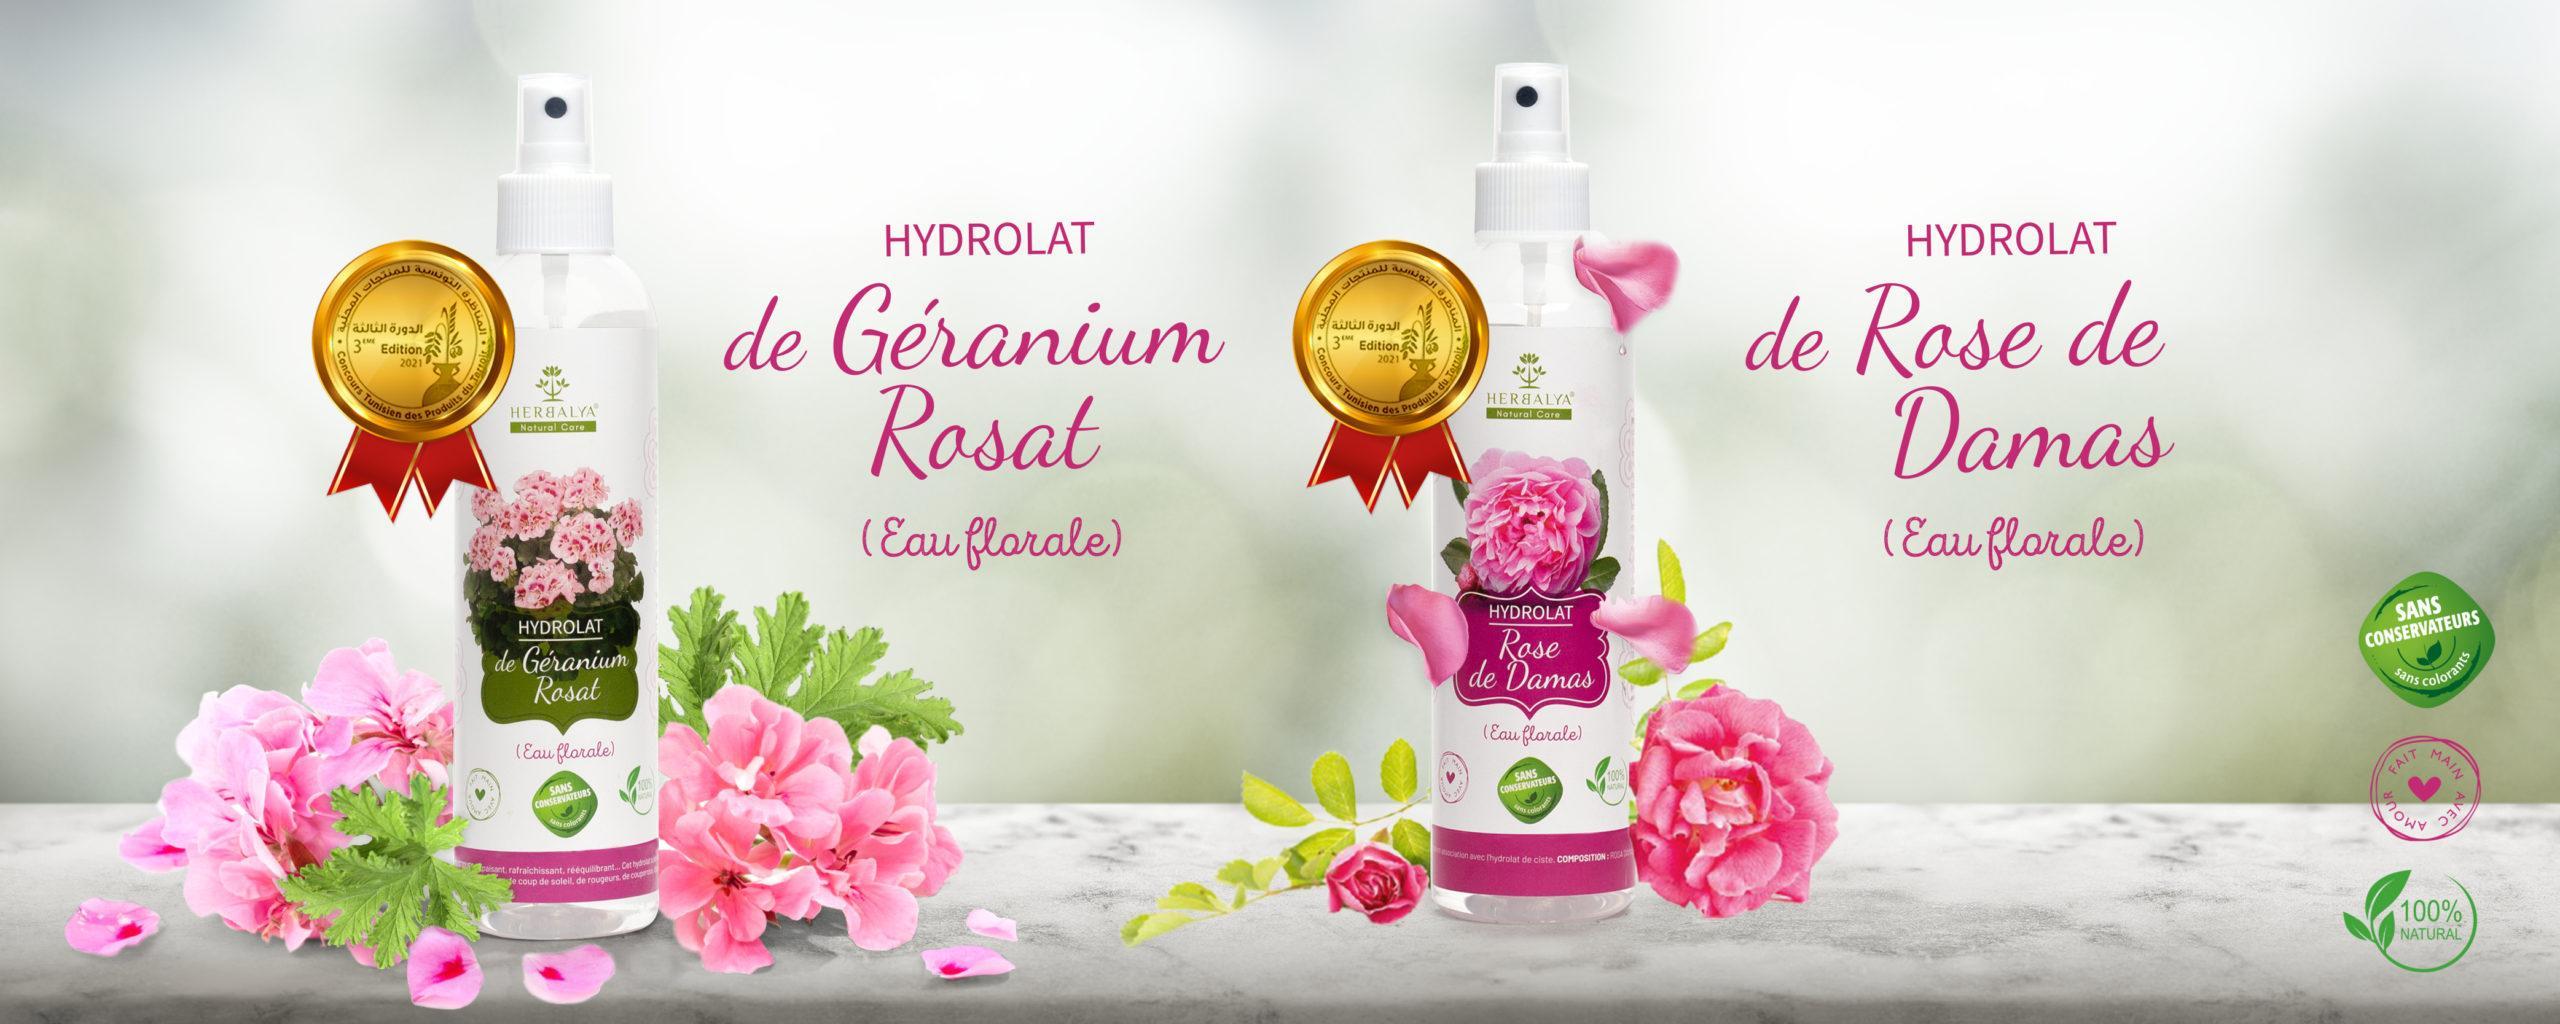 eau de rose - eau de géranium - meilleur eau florale - médaille d'or - meilleur hydrolat - eau de rose tunisie